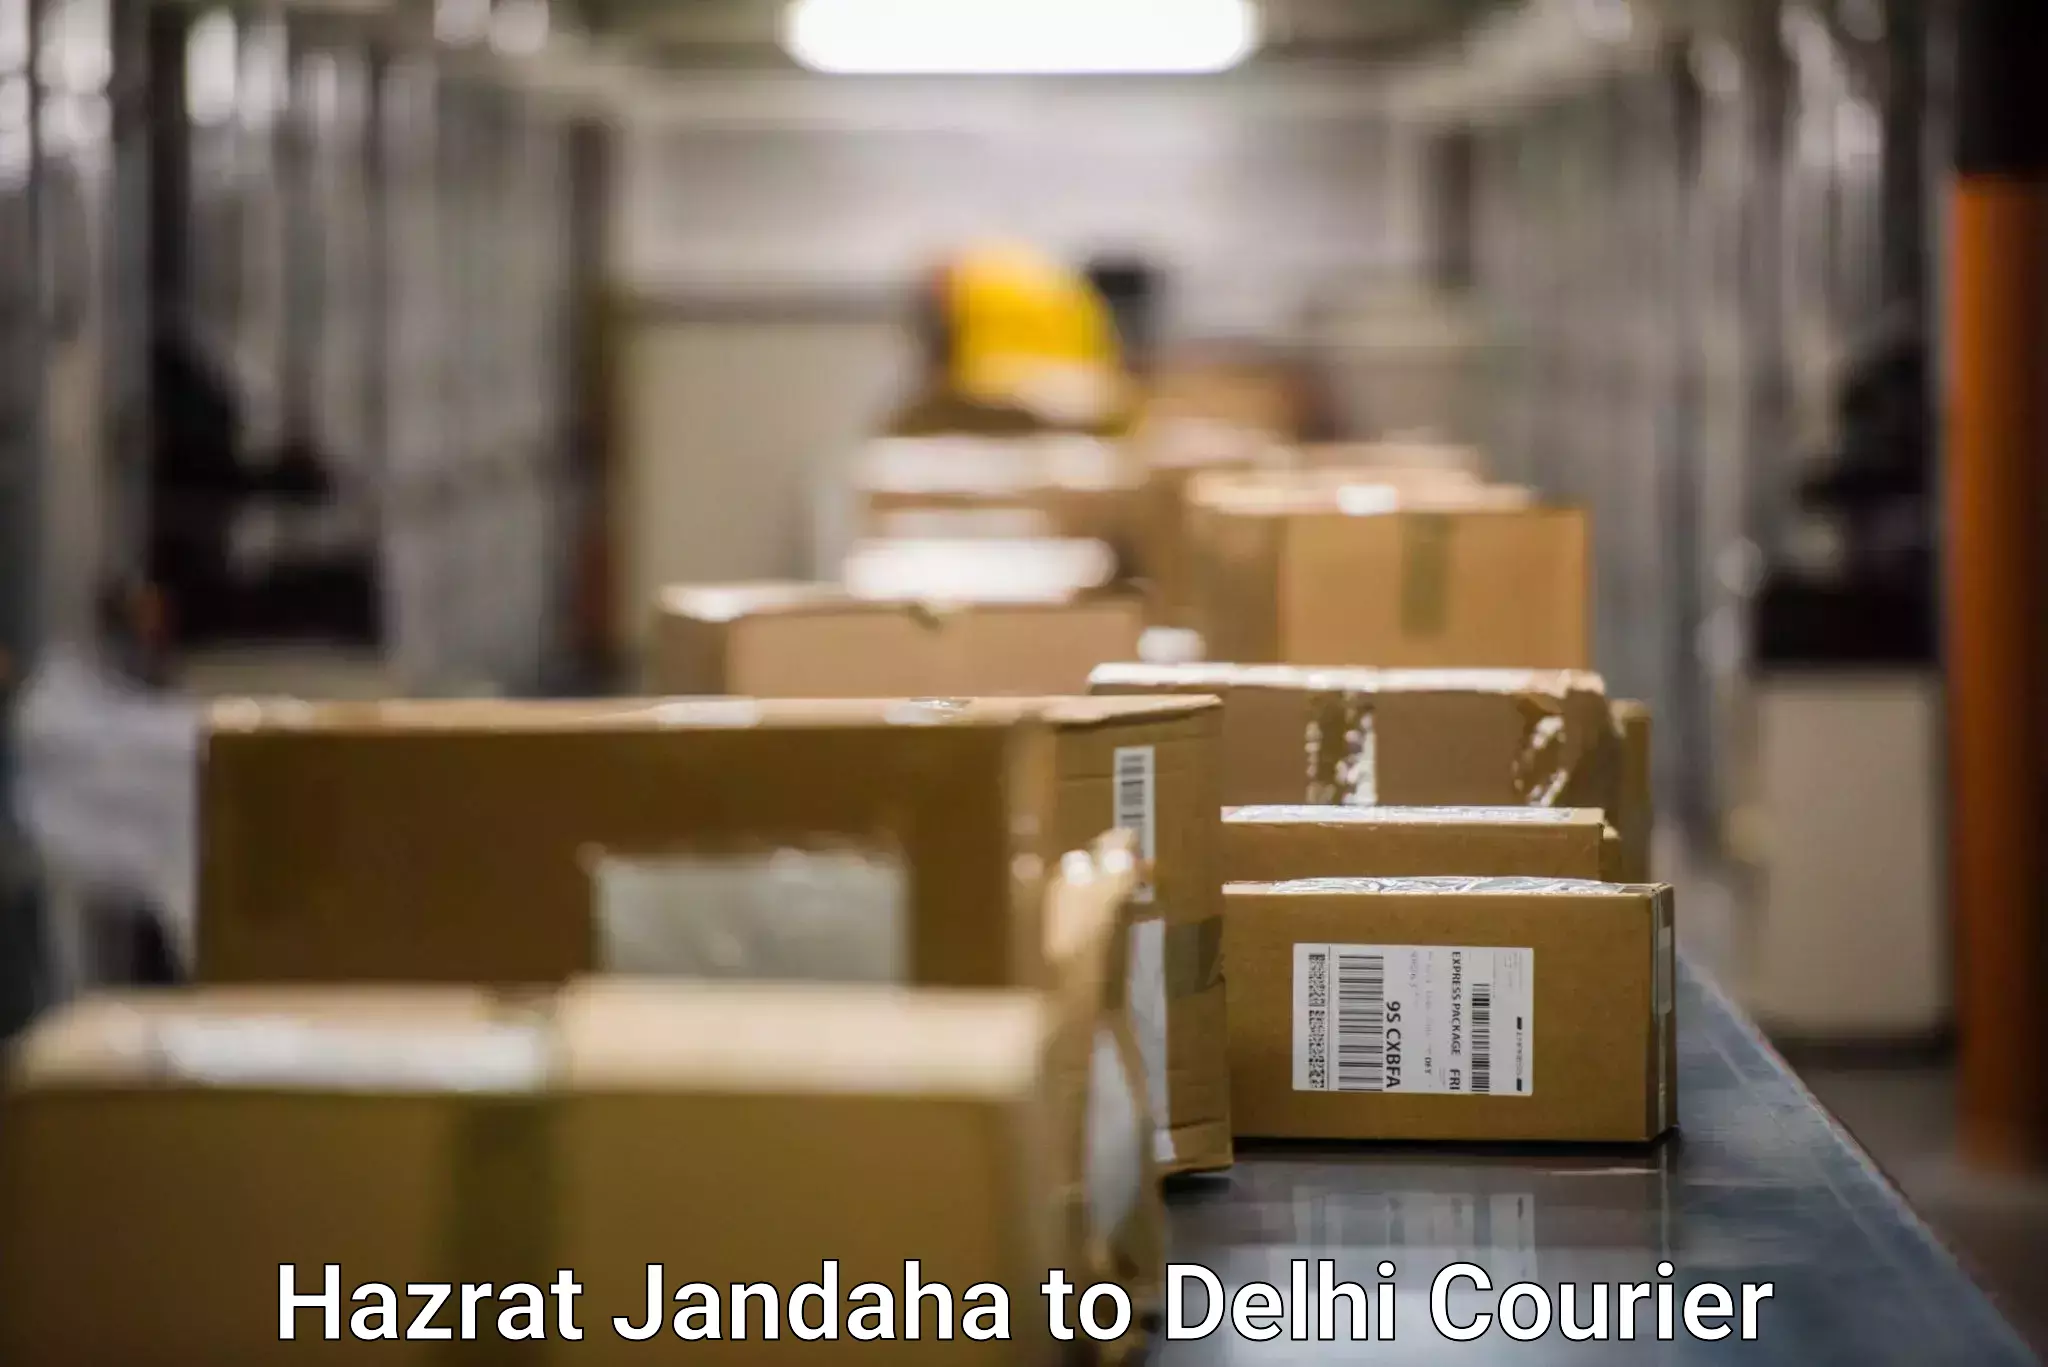 Quality courier partnerships Hazrat Jandaha to Jamia Millia Islamia New Delhi